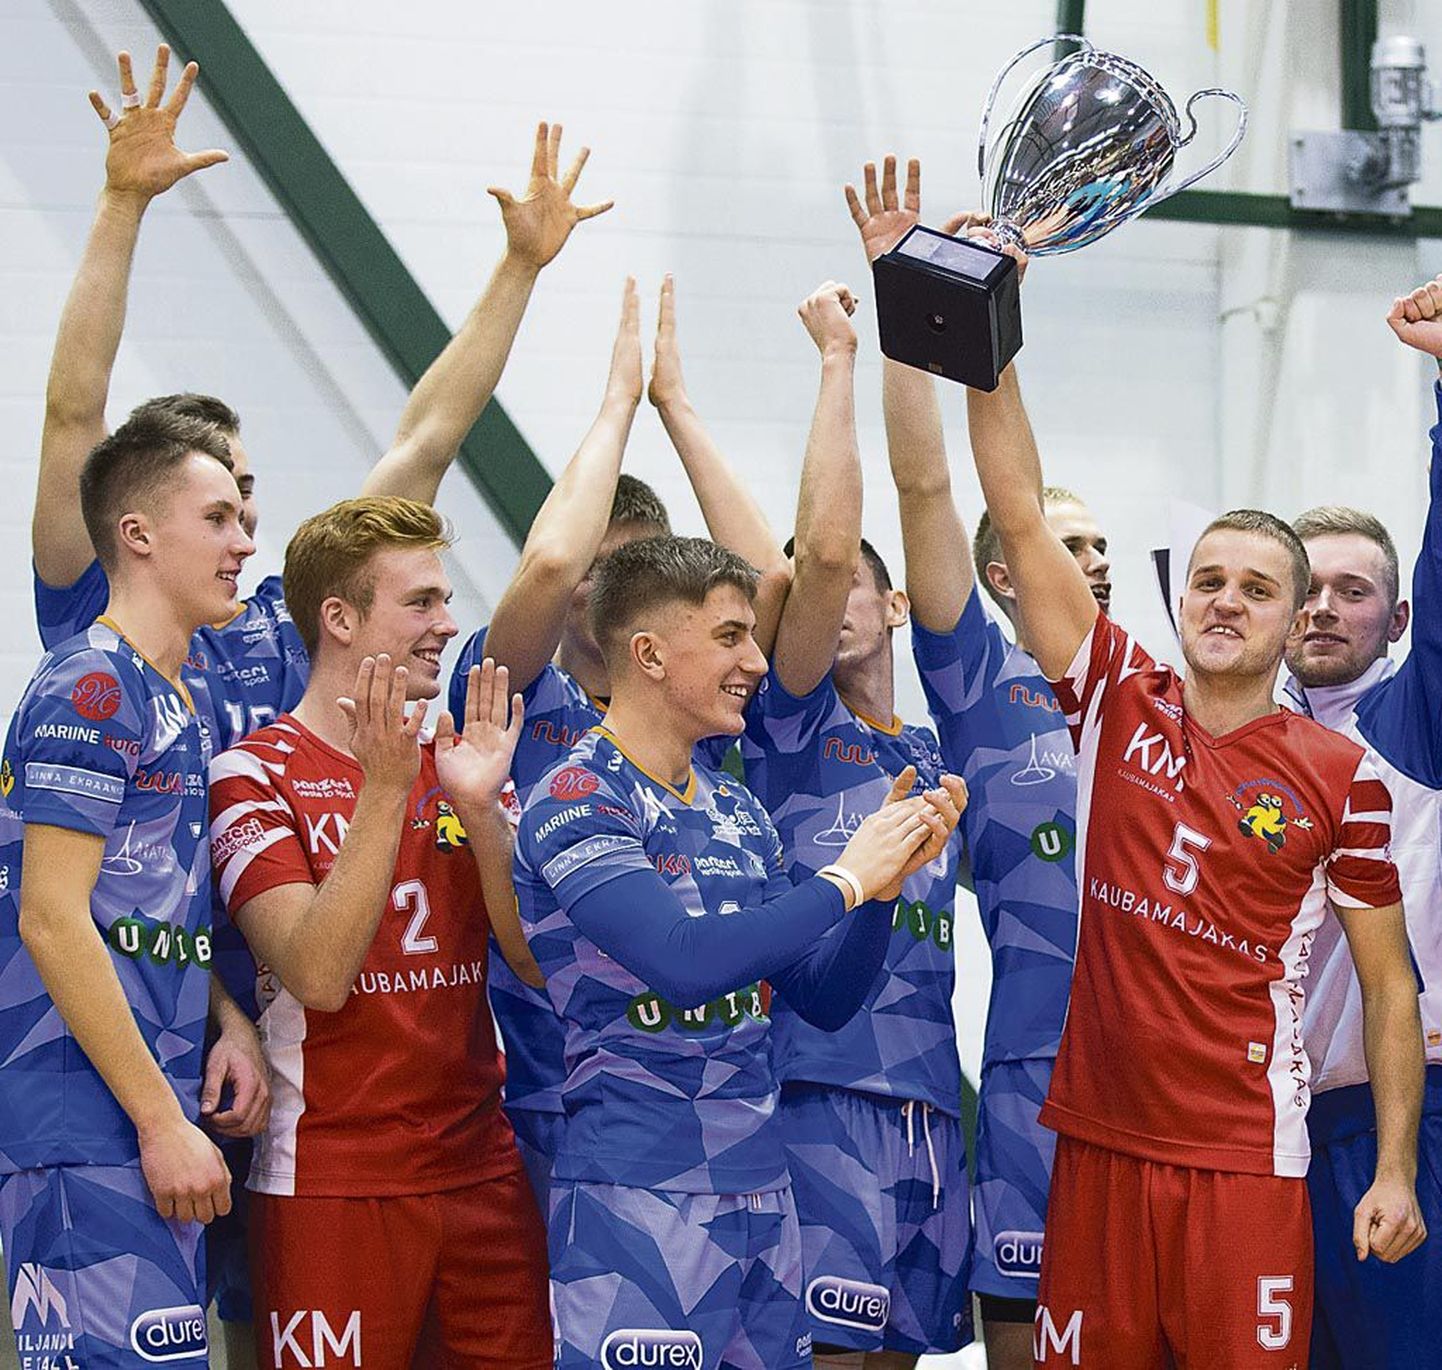 Karikafinaalis suurepärast mängu näidanud Pärnu meeskond võis pärast võitu tähistada.